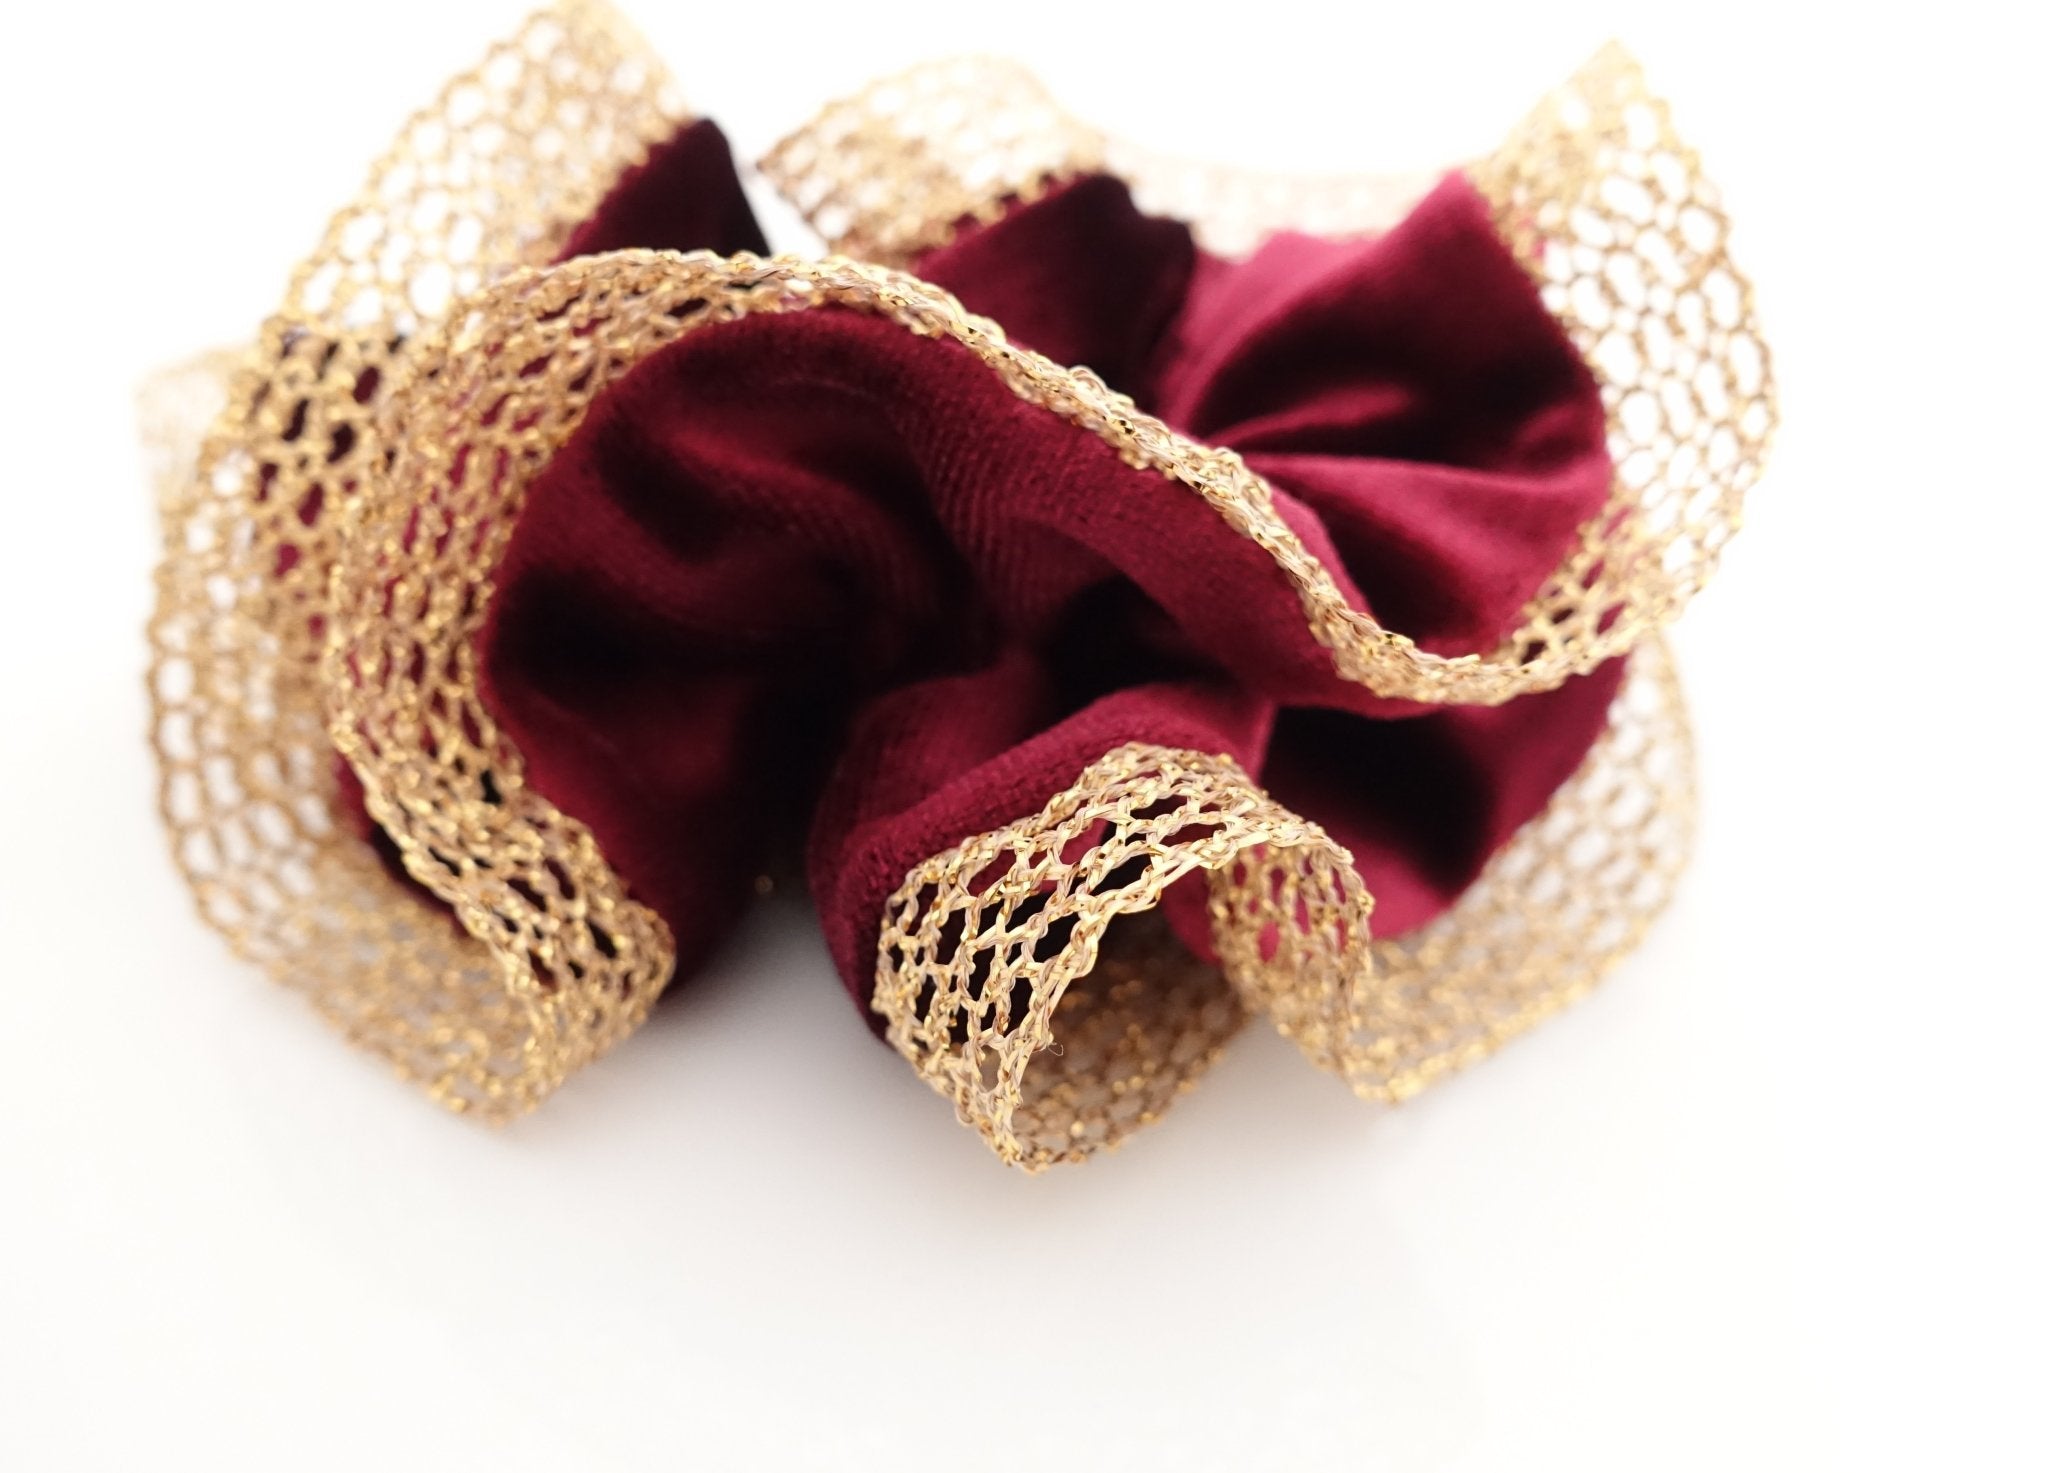 velvet scrunchies for women 